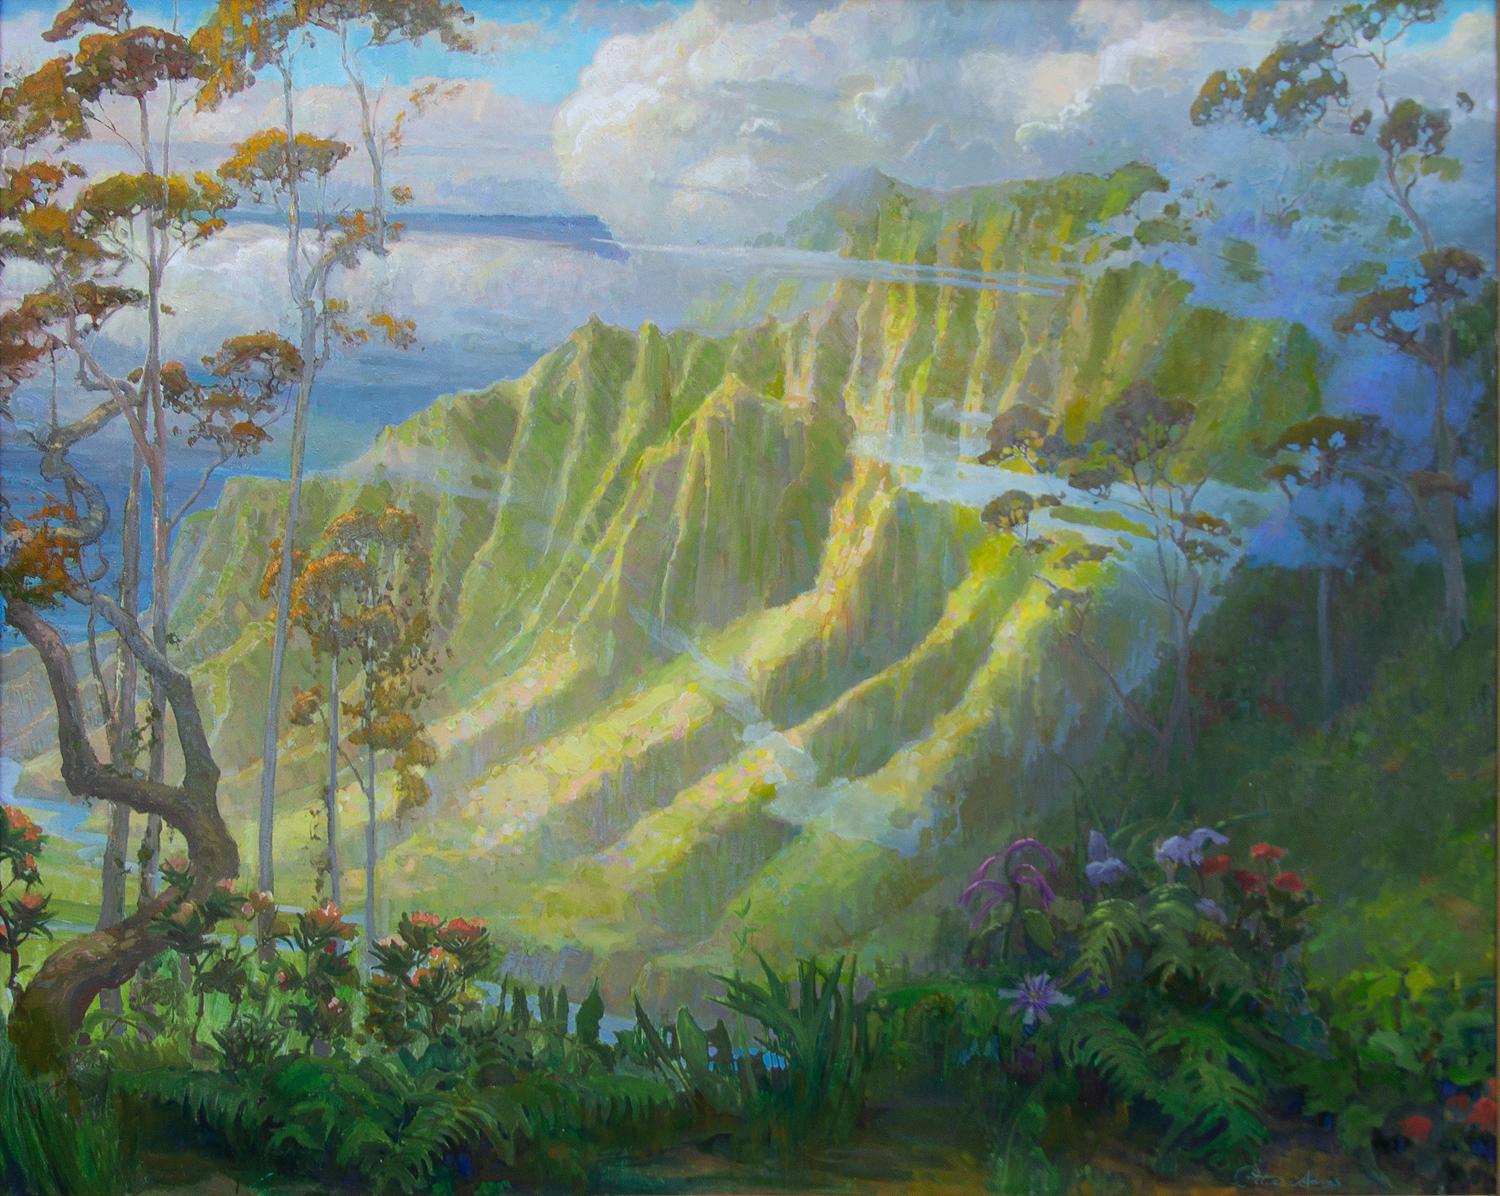 Parting Mist; Kalalau Lookout, Kauai - Painting by Peter Adams